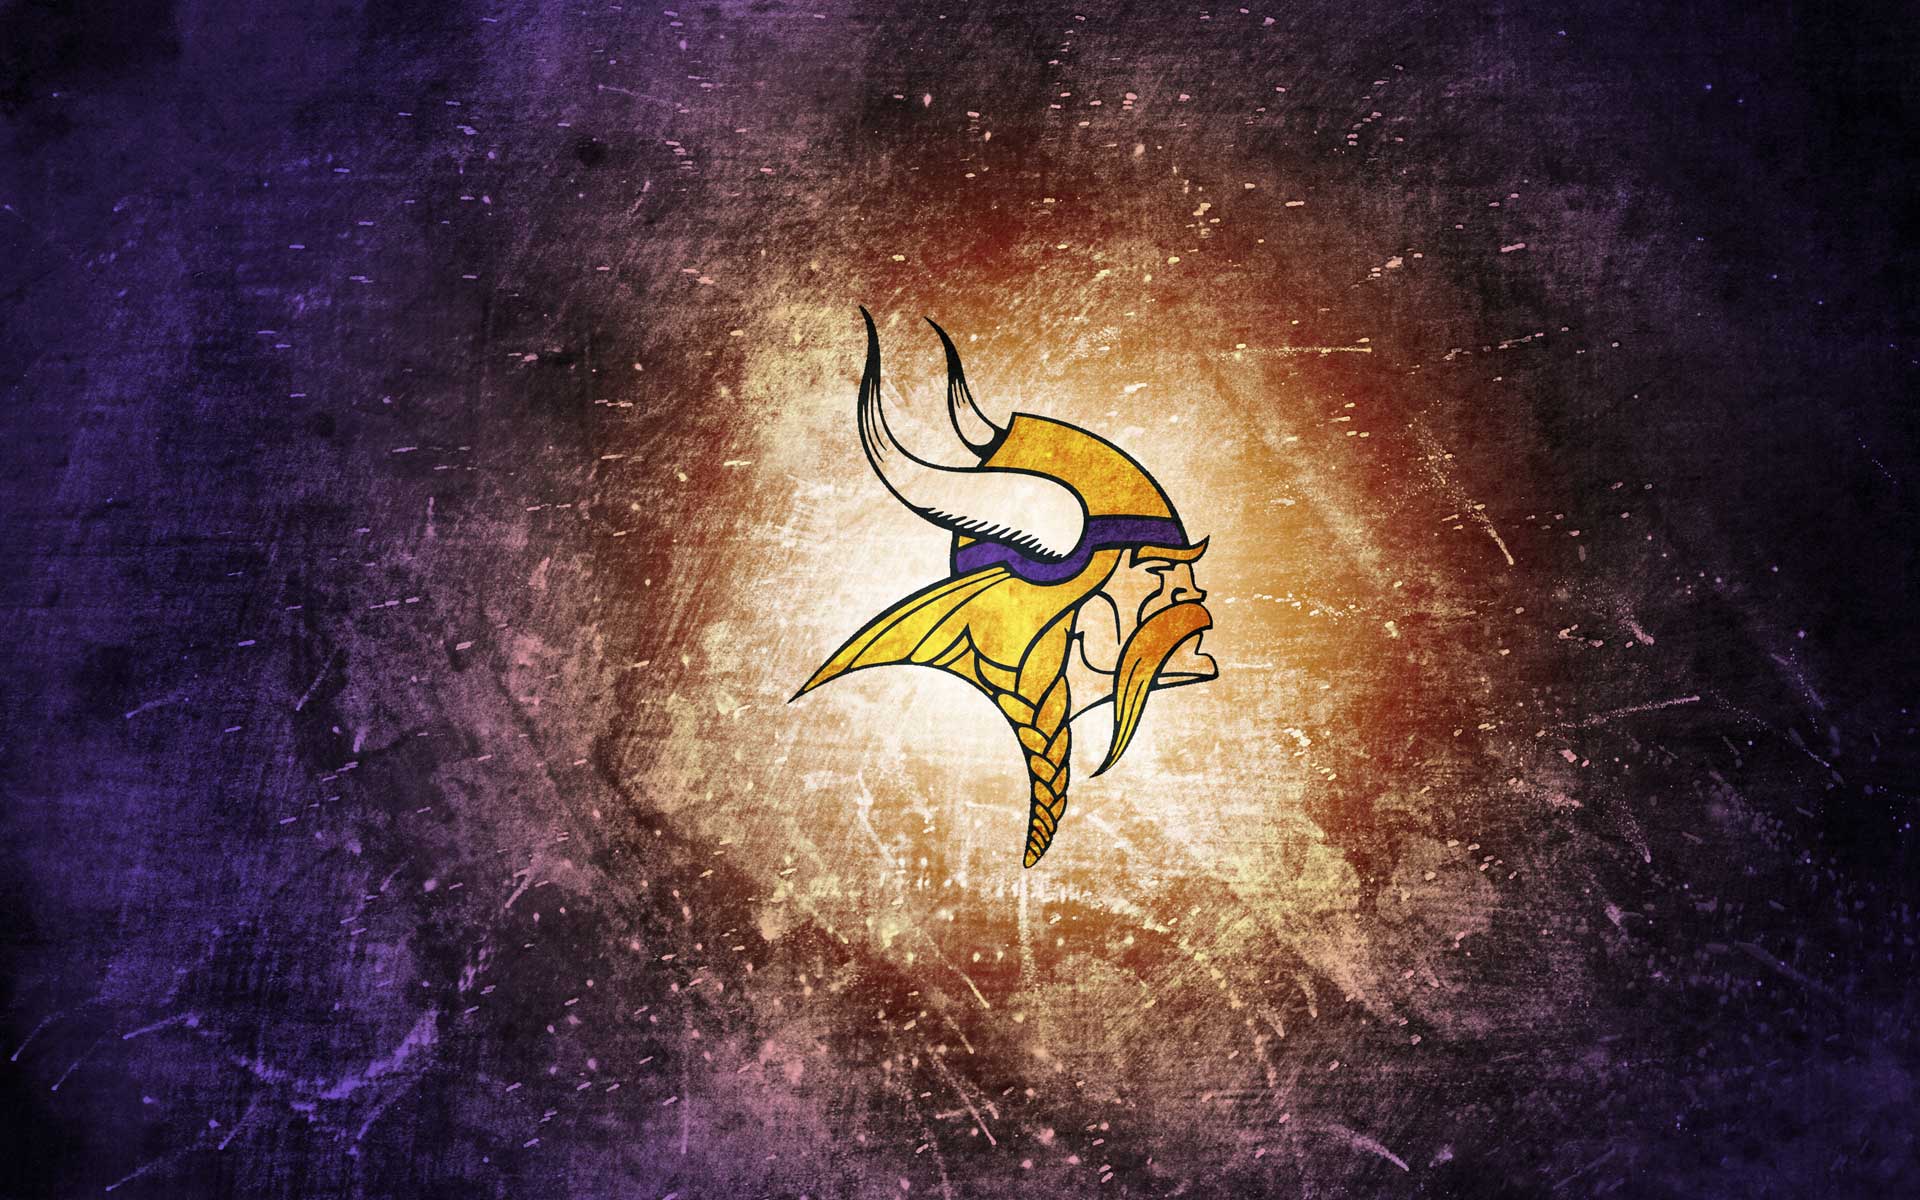 Mời bạn thưởng thức hình nền Minnesota Vikings Wallpaper HD chất lượng cao, tràn đầy sức mạnh và uy lực của những chiến binh Viking. Sự kết hợp tuyệt vời giữa độ phân giải cao và những hình ảnh đầy sức hút sẽ khiến tâm hồn của bạn bay bổng, tạo nguồn động lực mới cho công việc và cuộc sống.